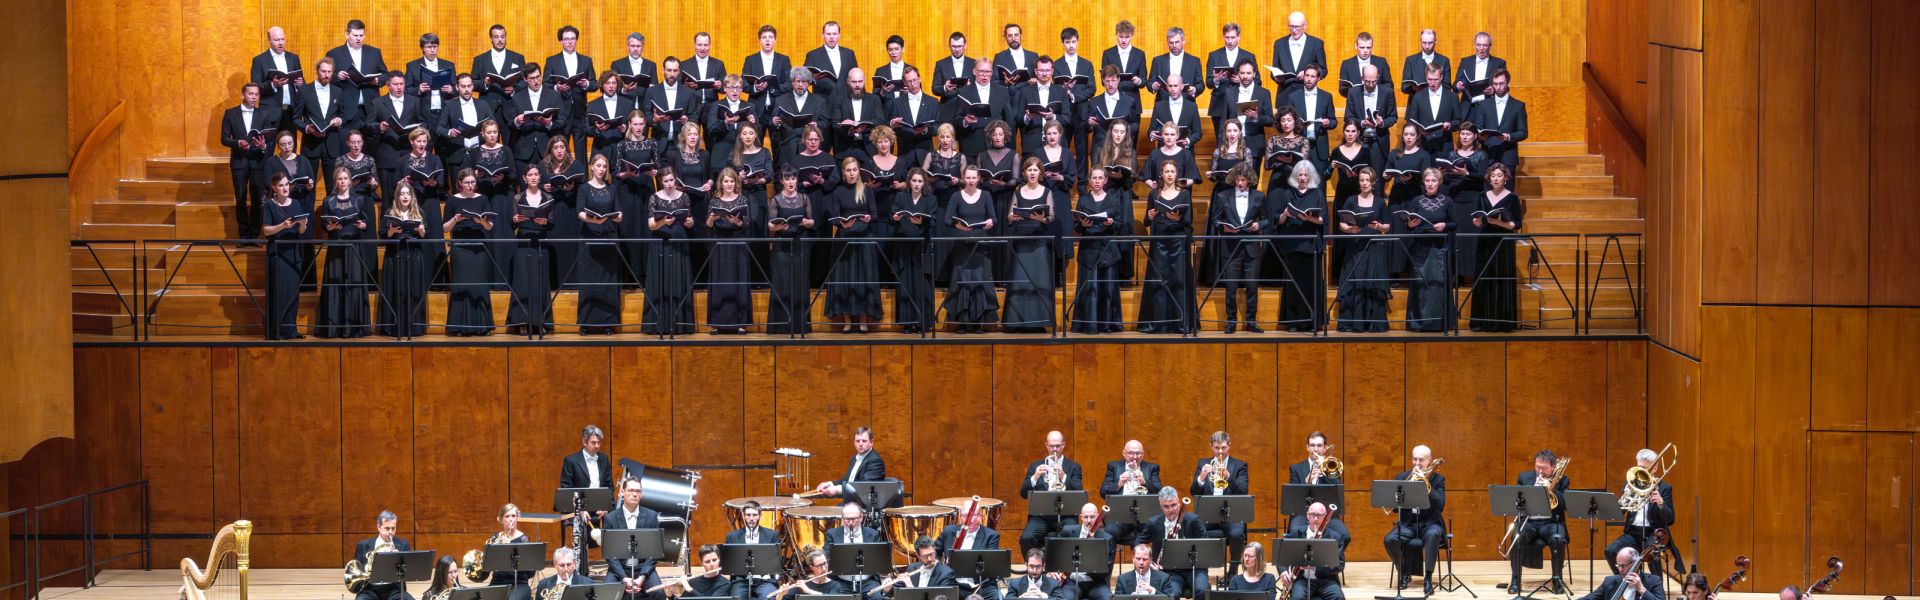 Festivalchor mit Stuttgarter Philharmonikern im Beethoven-Saal (Foto: Holger Schneider)